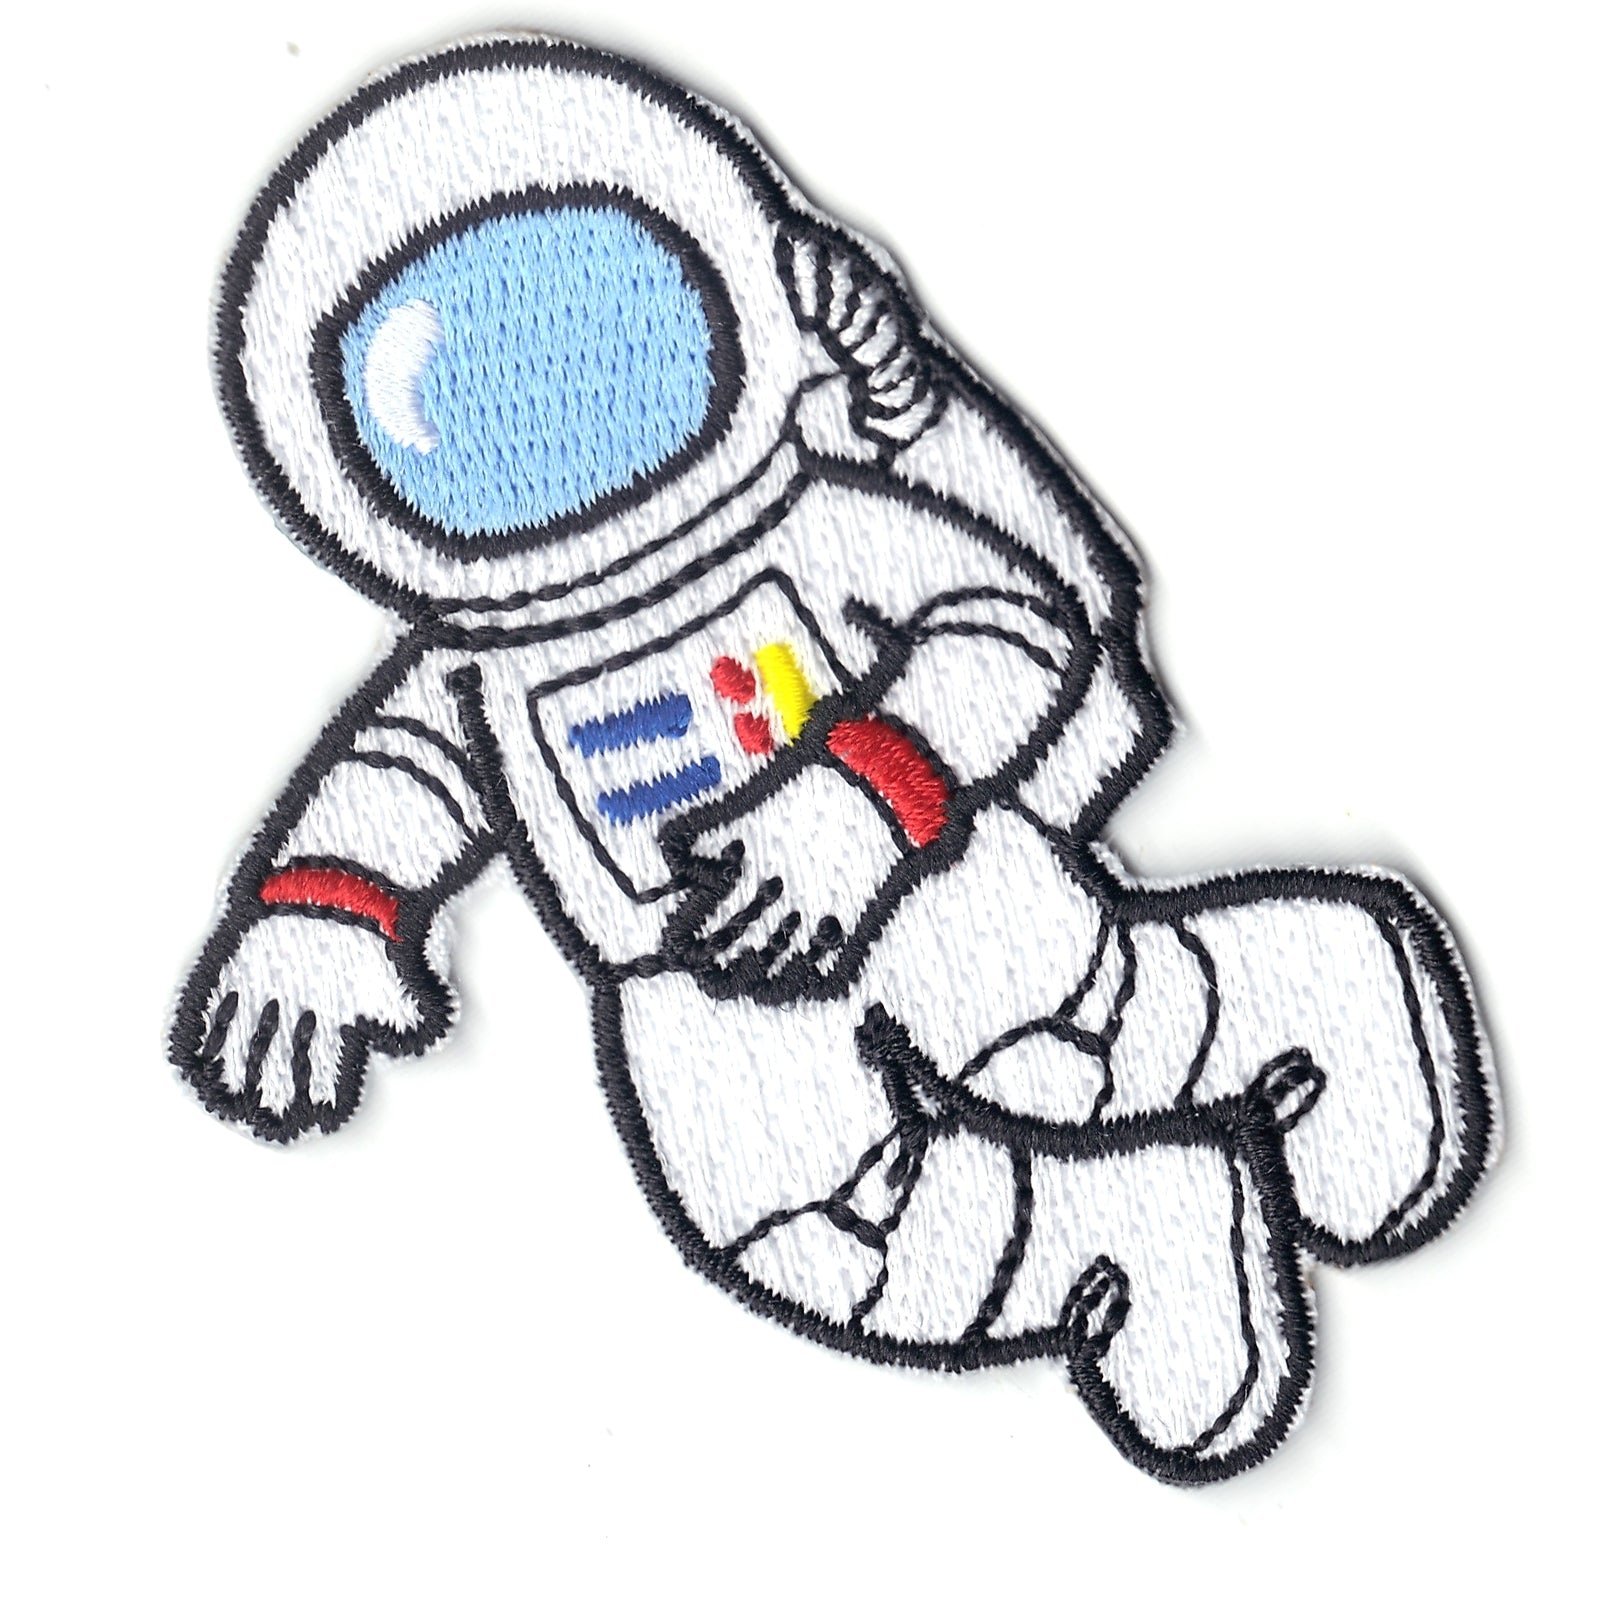 Как разукрасить космонавта